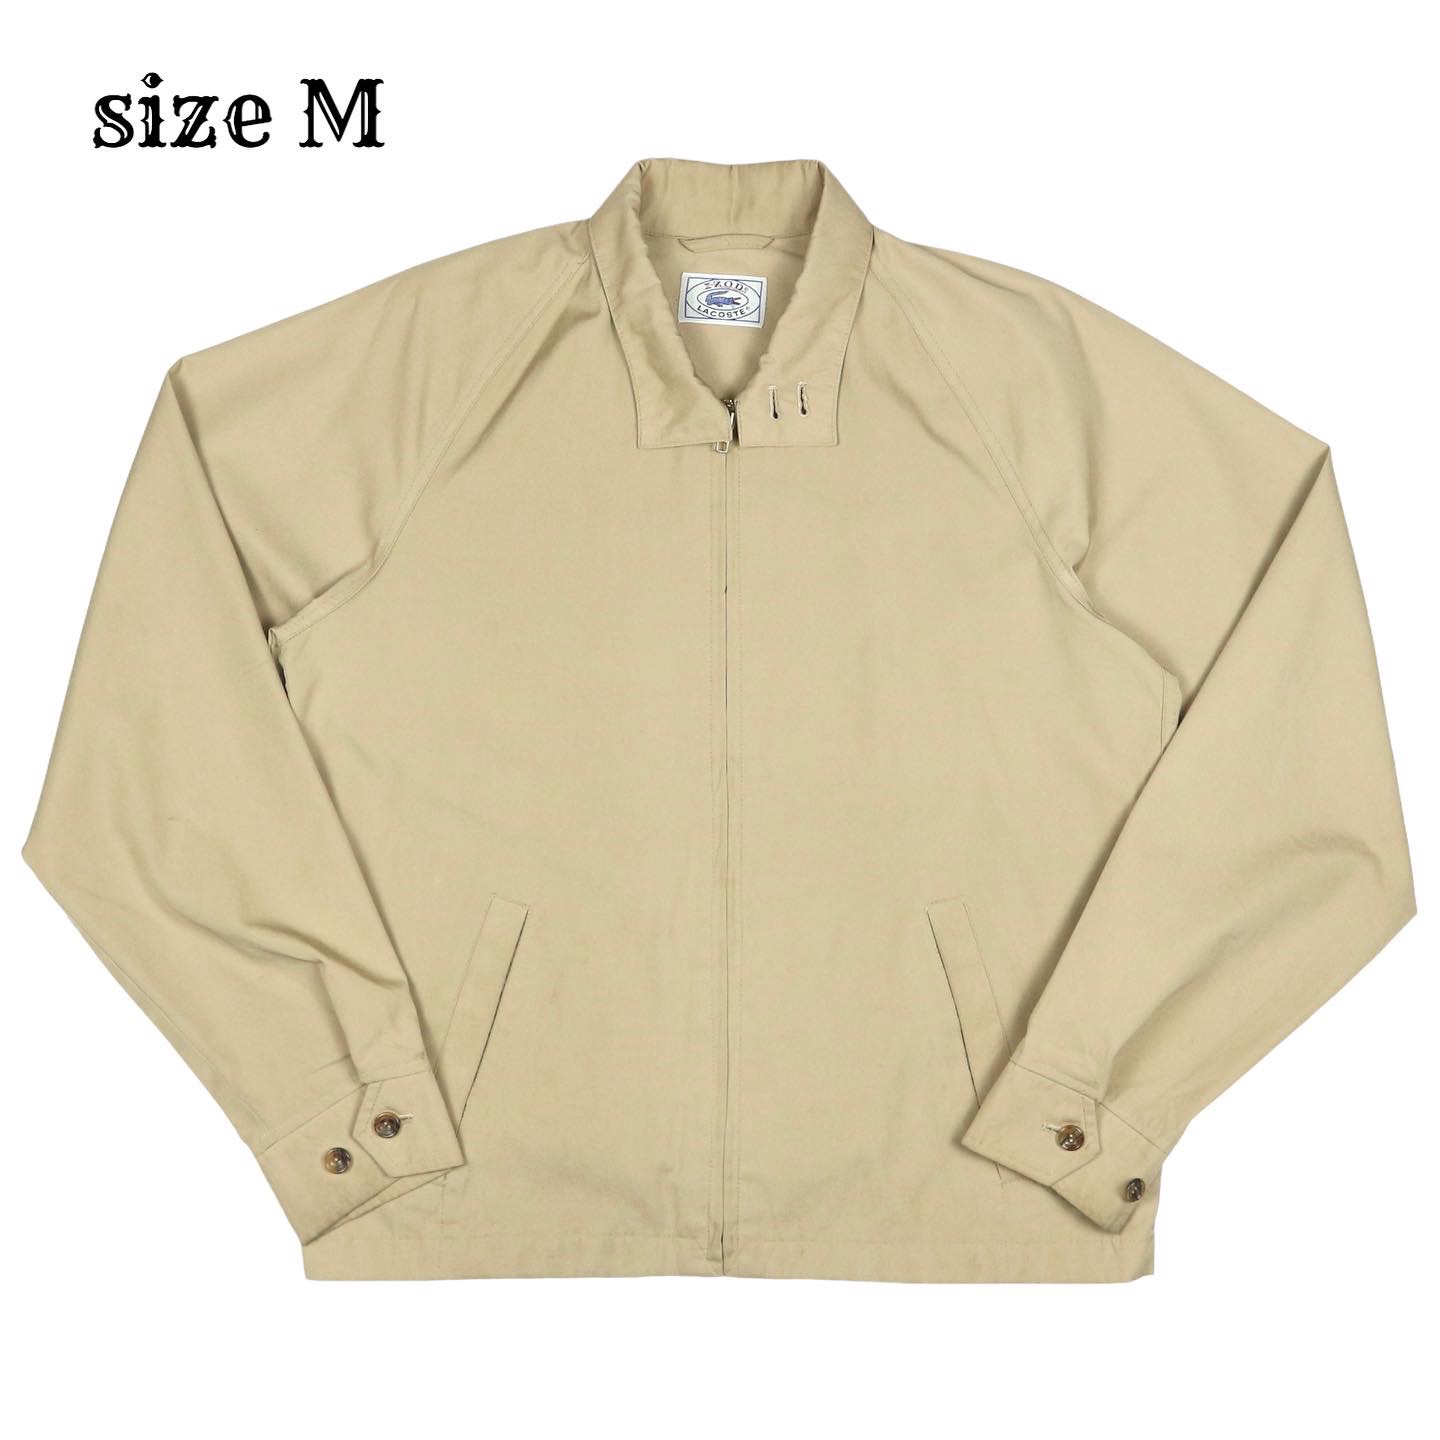 Lacoste Harrington Jacket Size M